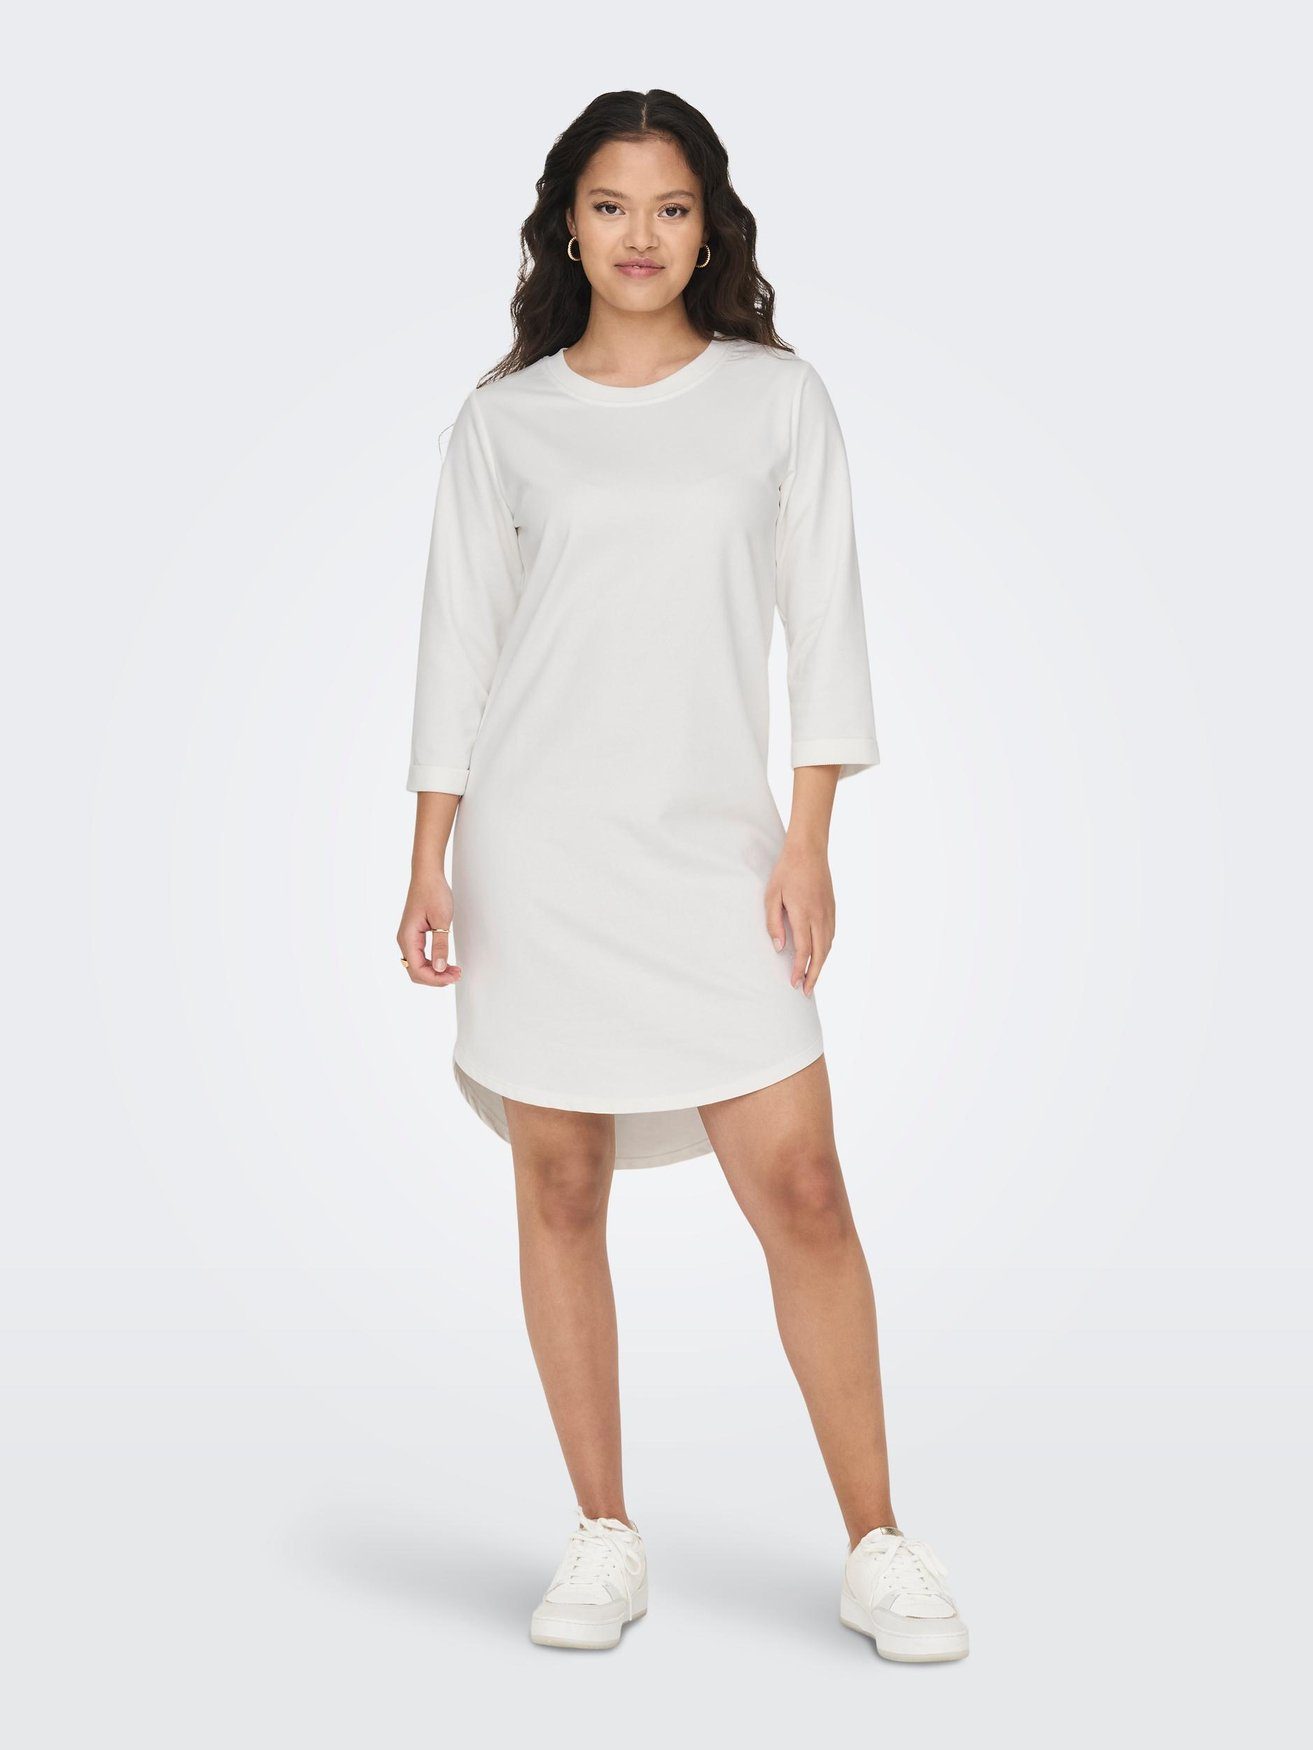 JACQUELINE de Rundhals in YONG Kleid 3/4 Arm (knielang) Weiß-3 Shirtkleid Sweat JDYIVY 5608